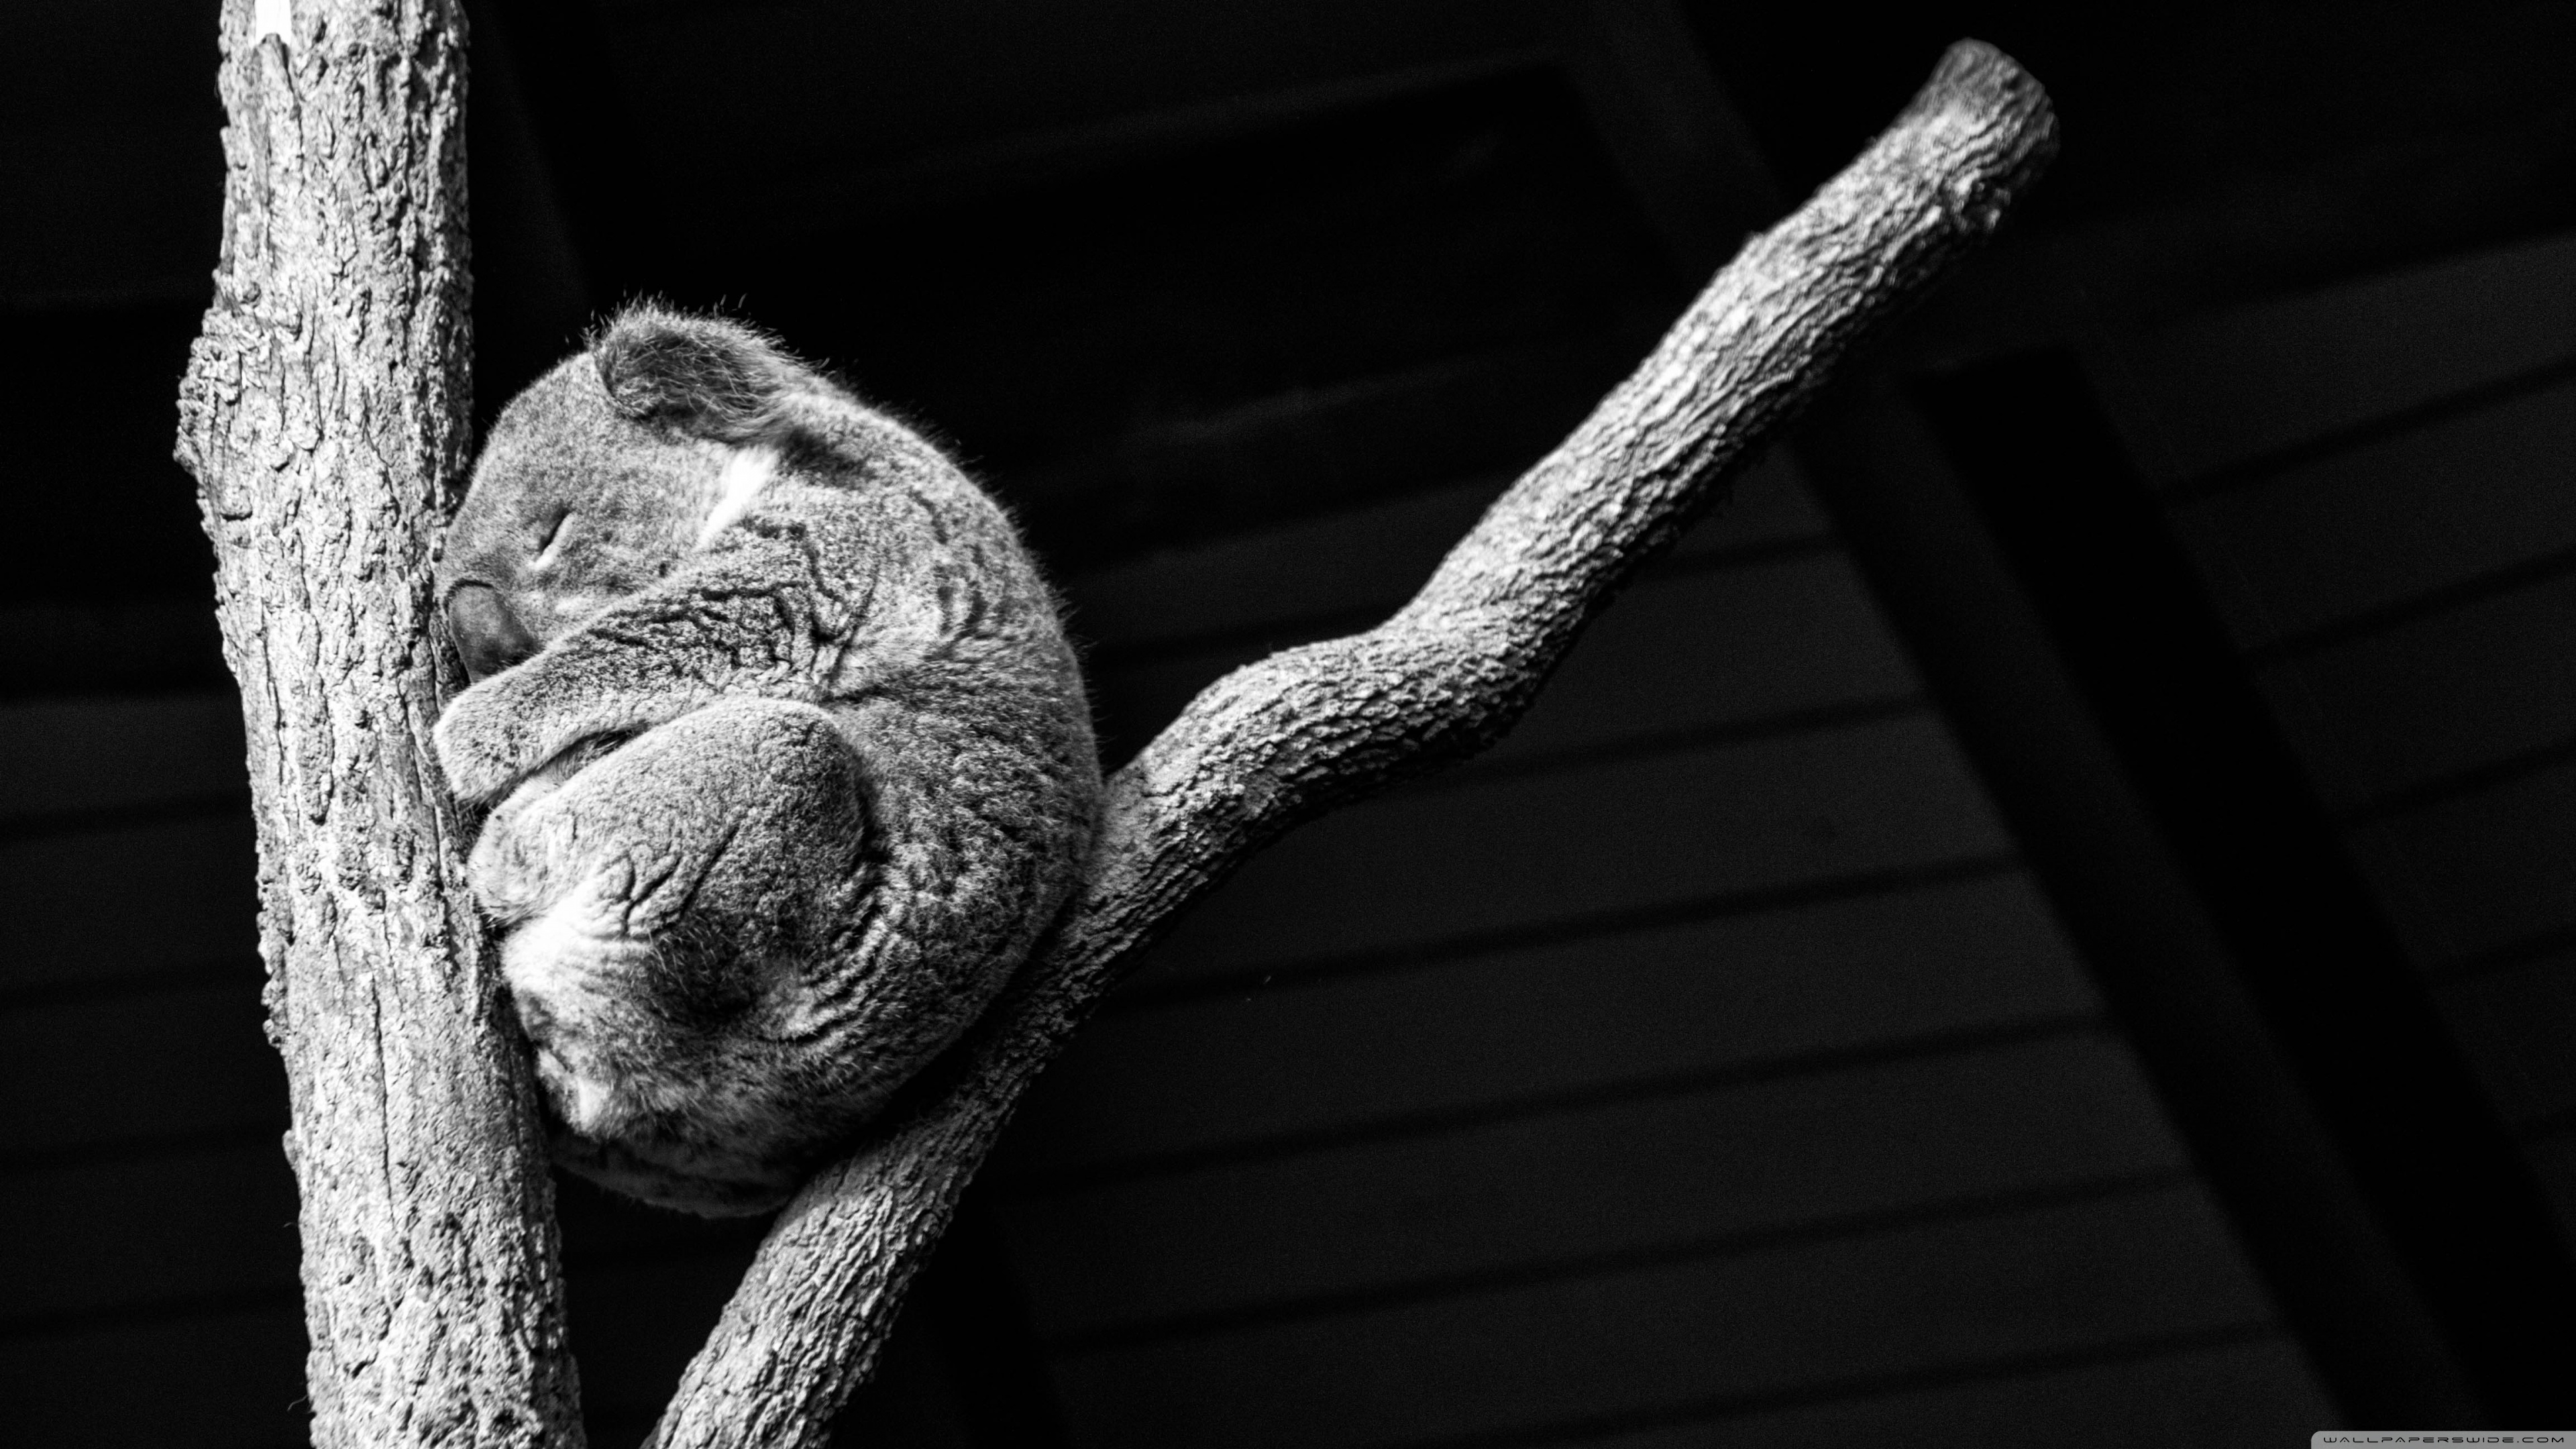 Hdwallpaper87.com Koala taking a nap Desktop